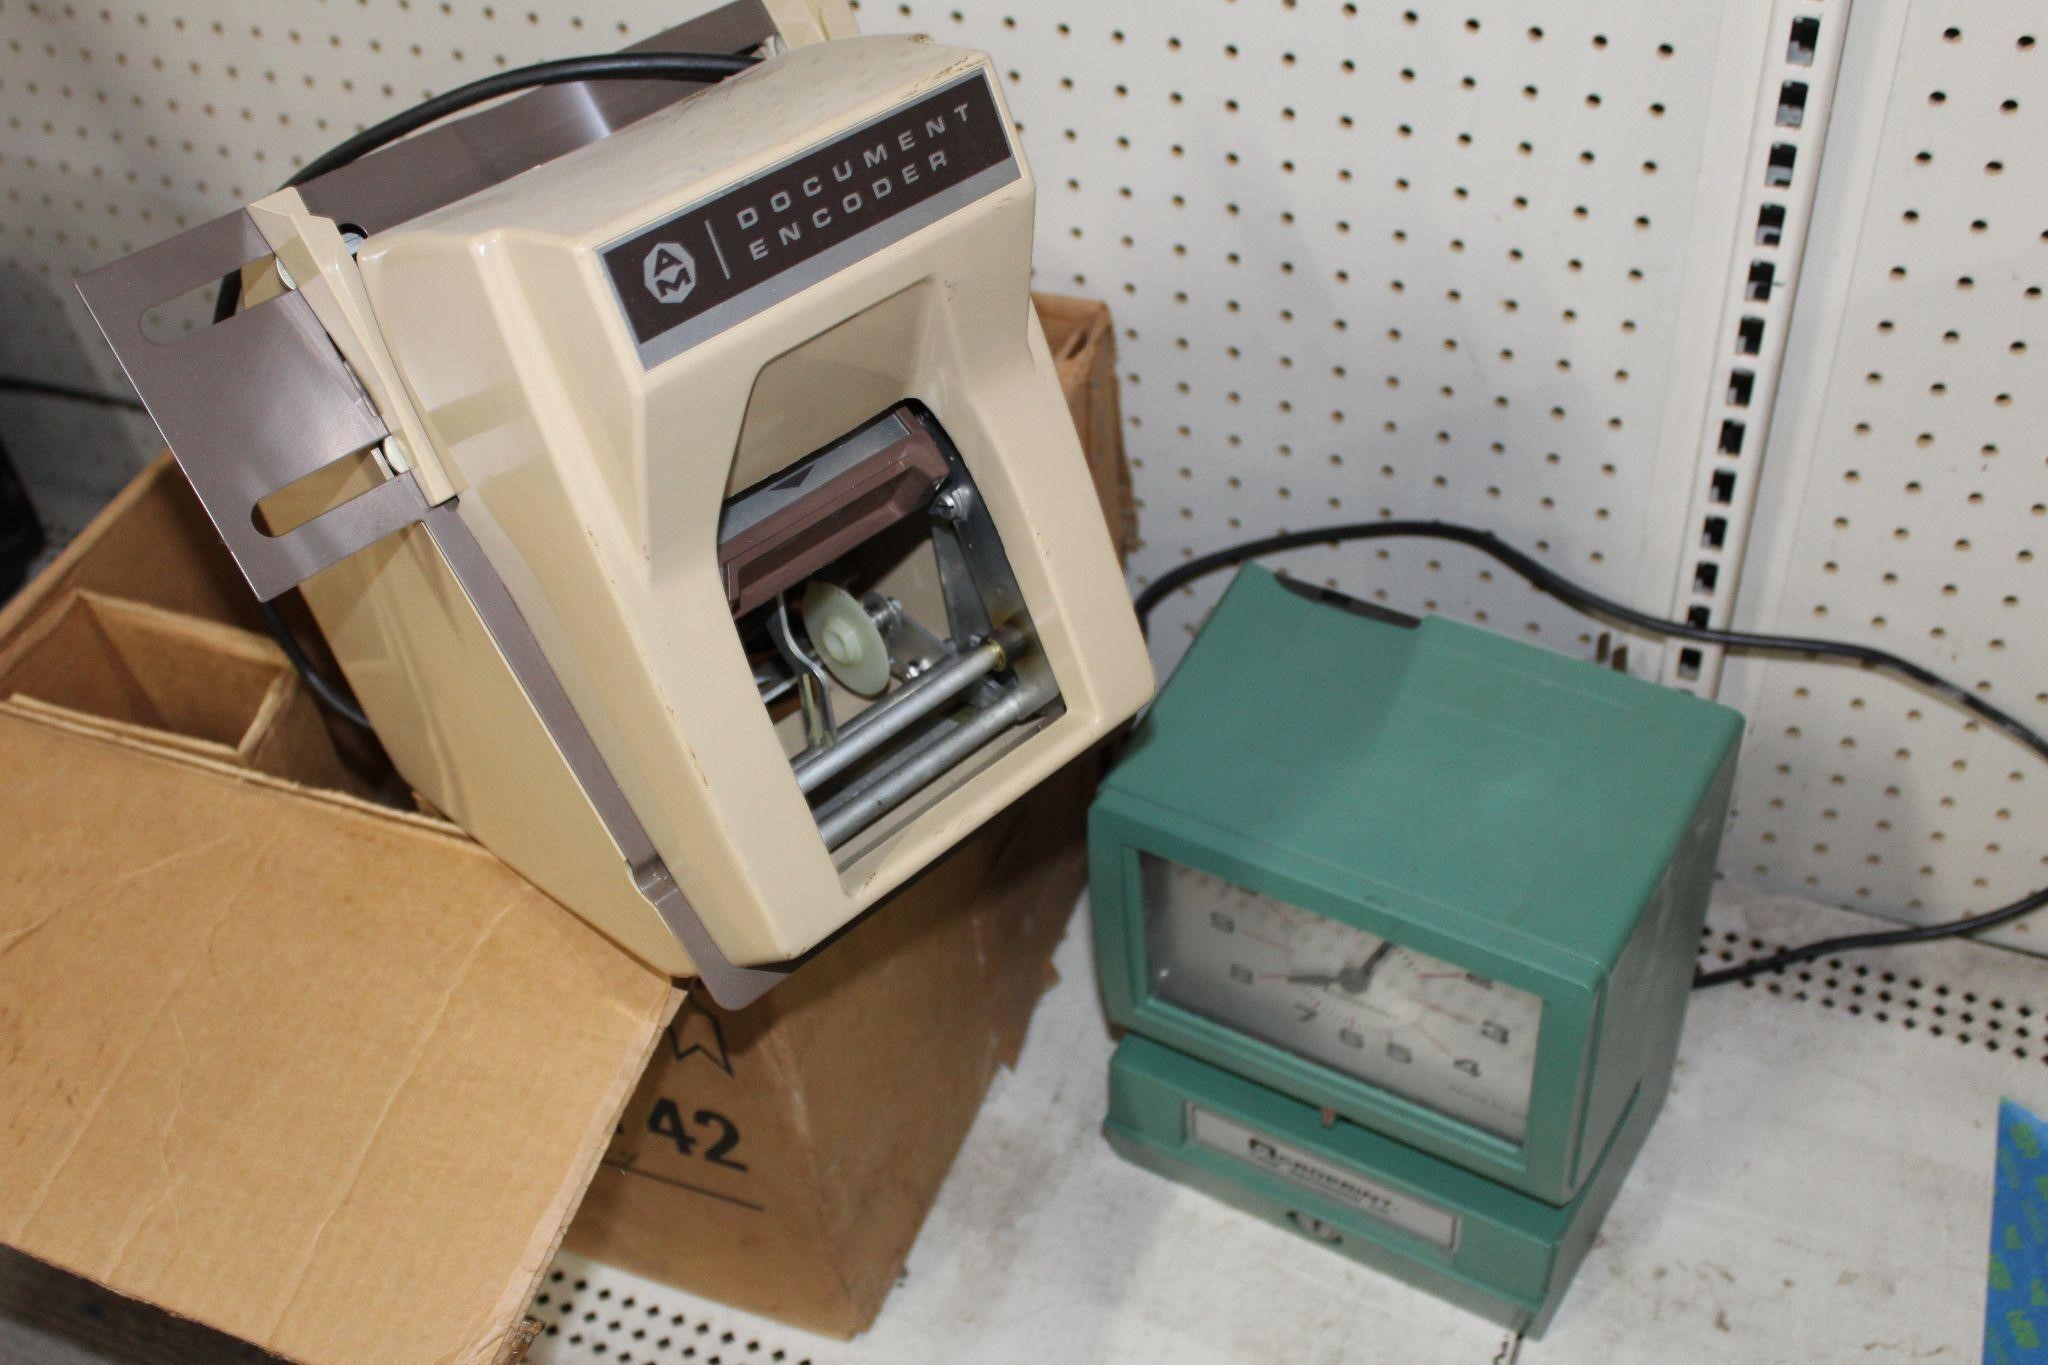 Vintage Time Recorder/Stamp Clocks